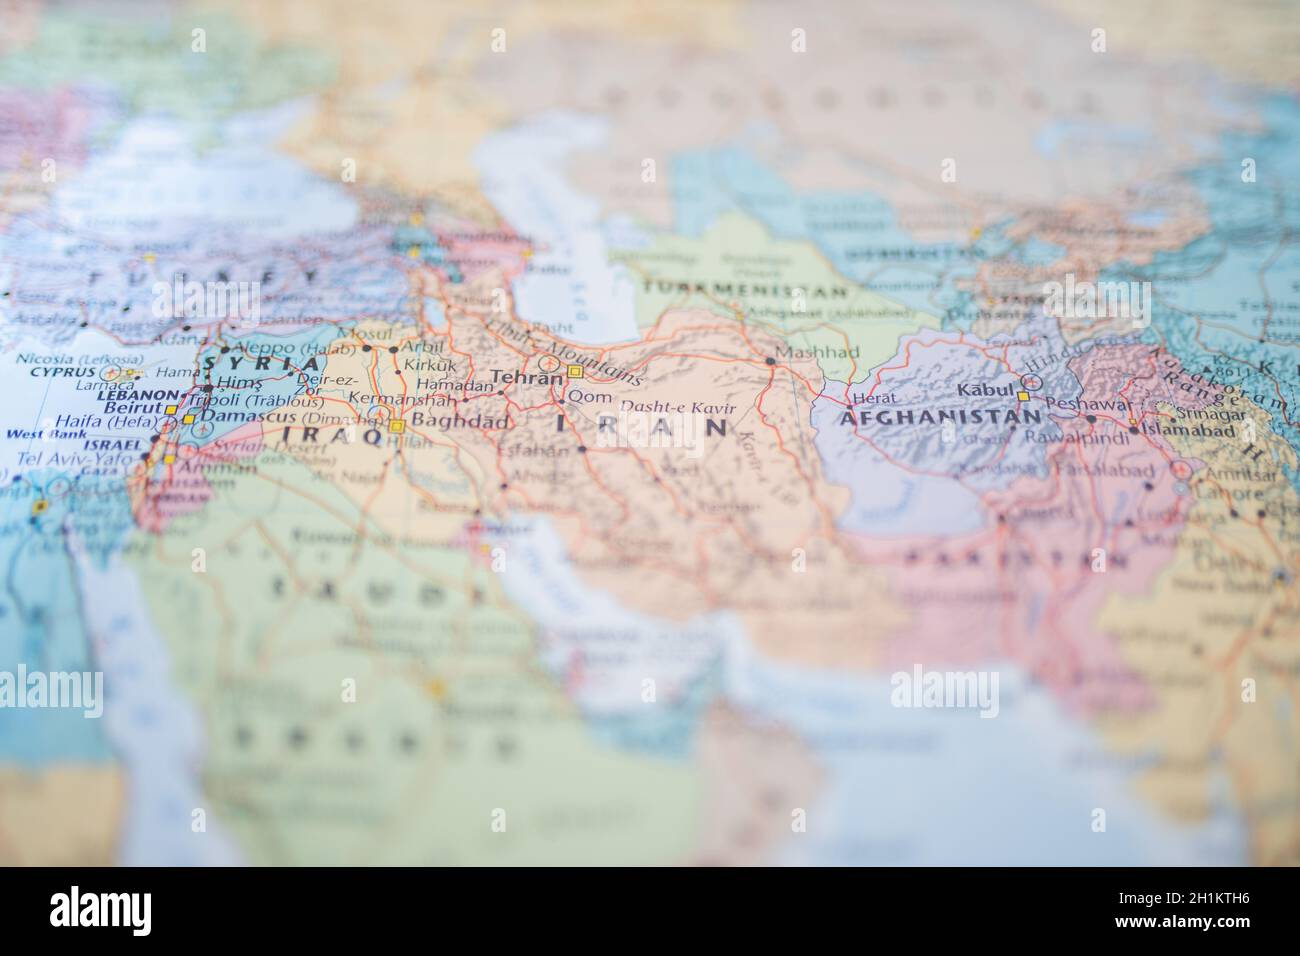 Photo de la Syrie, de l'Irak, de l'Iran et de l'Afganistan sur une carte floue et colorée du Moyen-Orient Banque D'Images